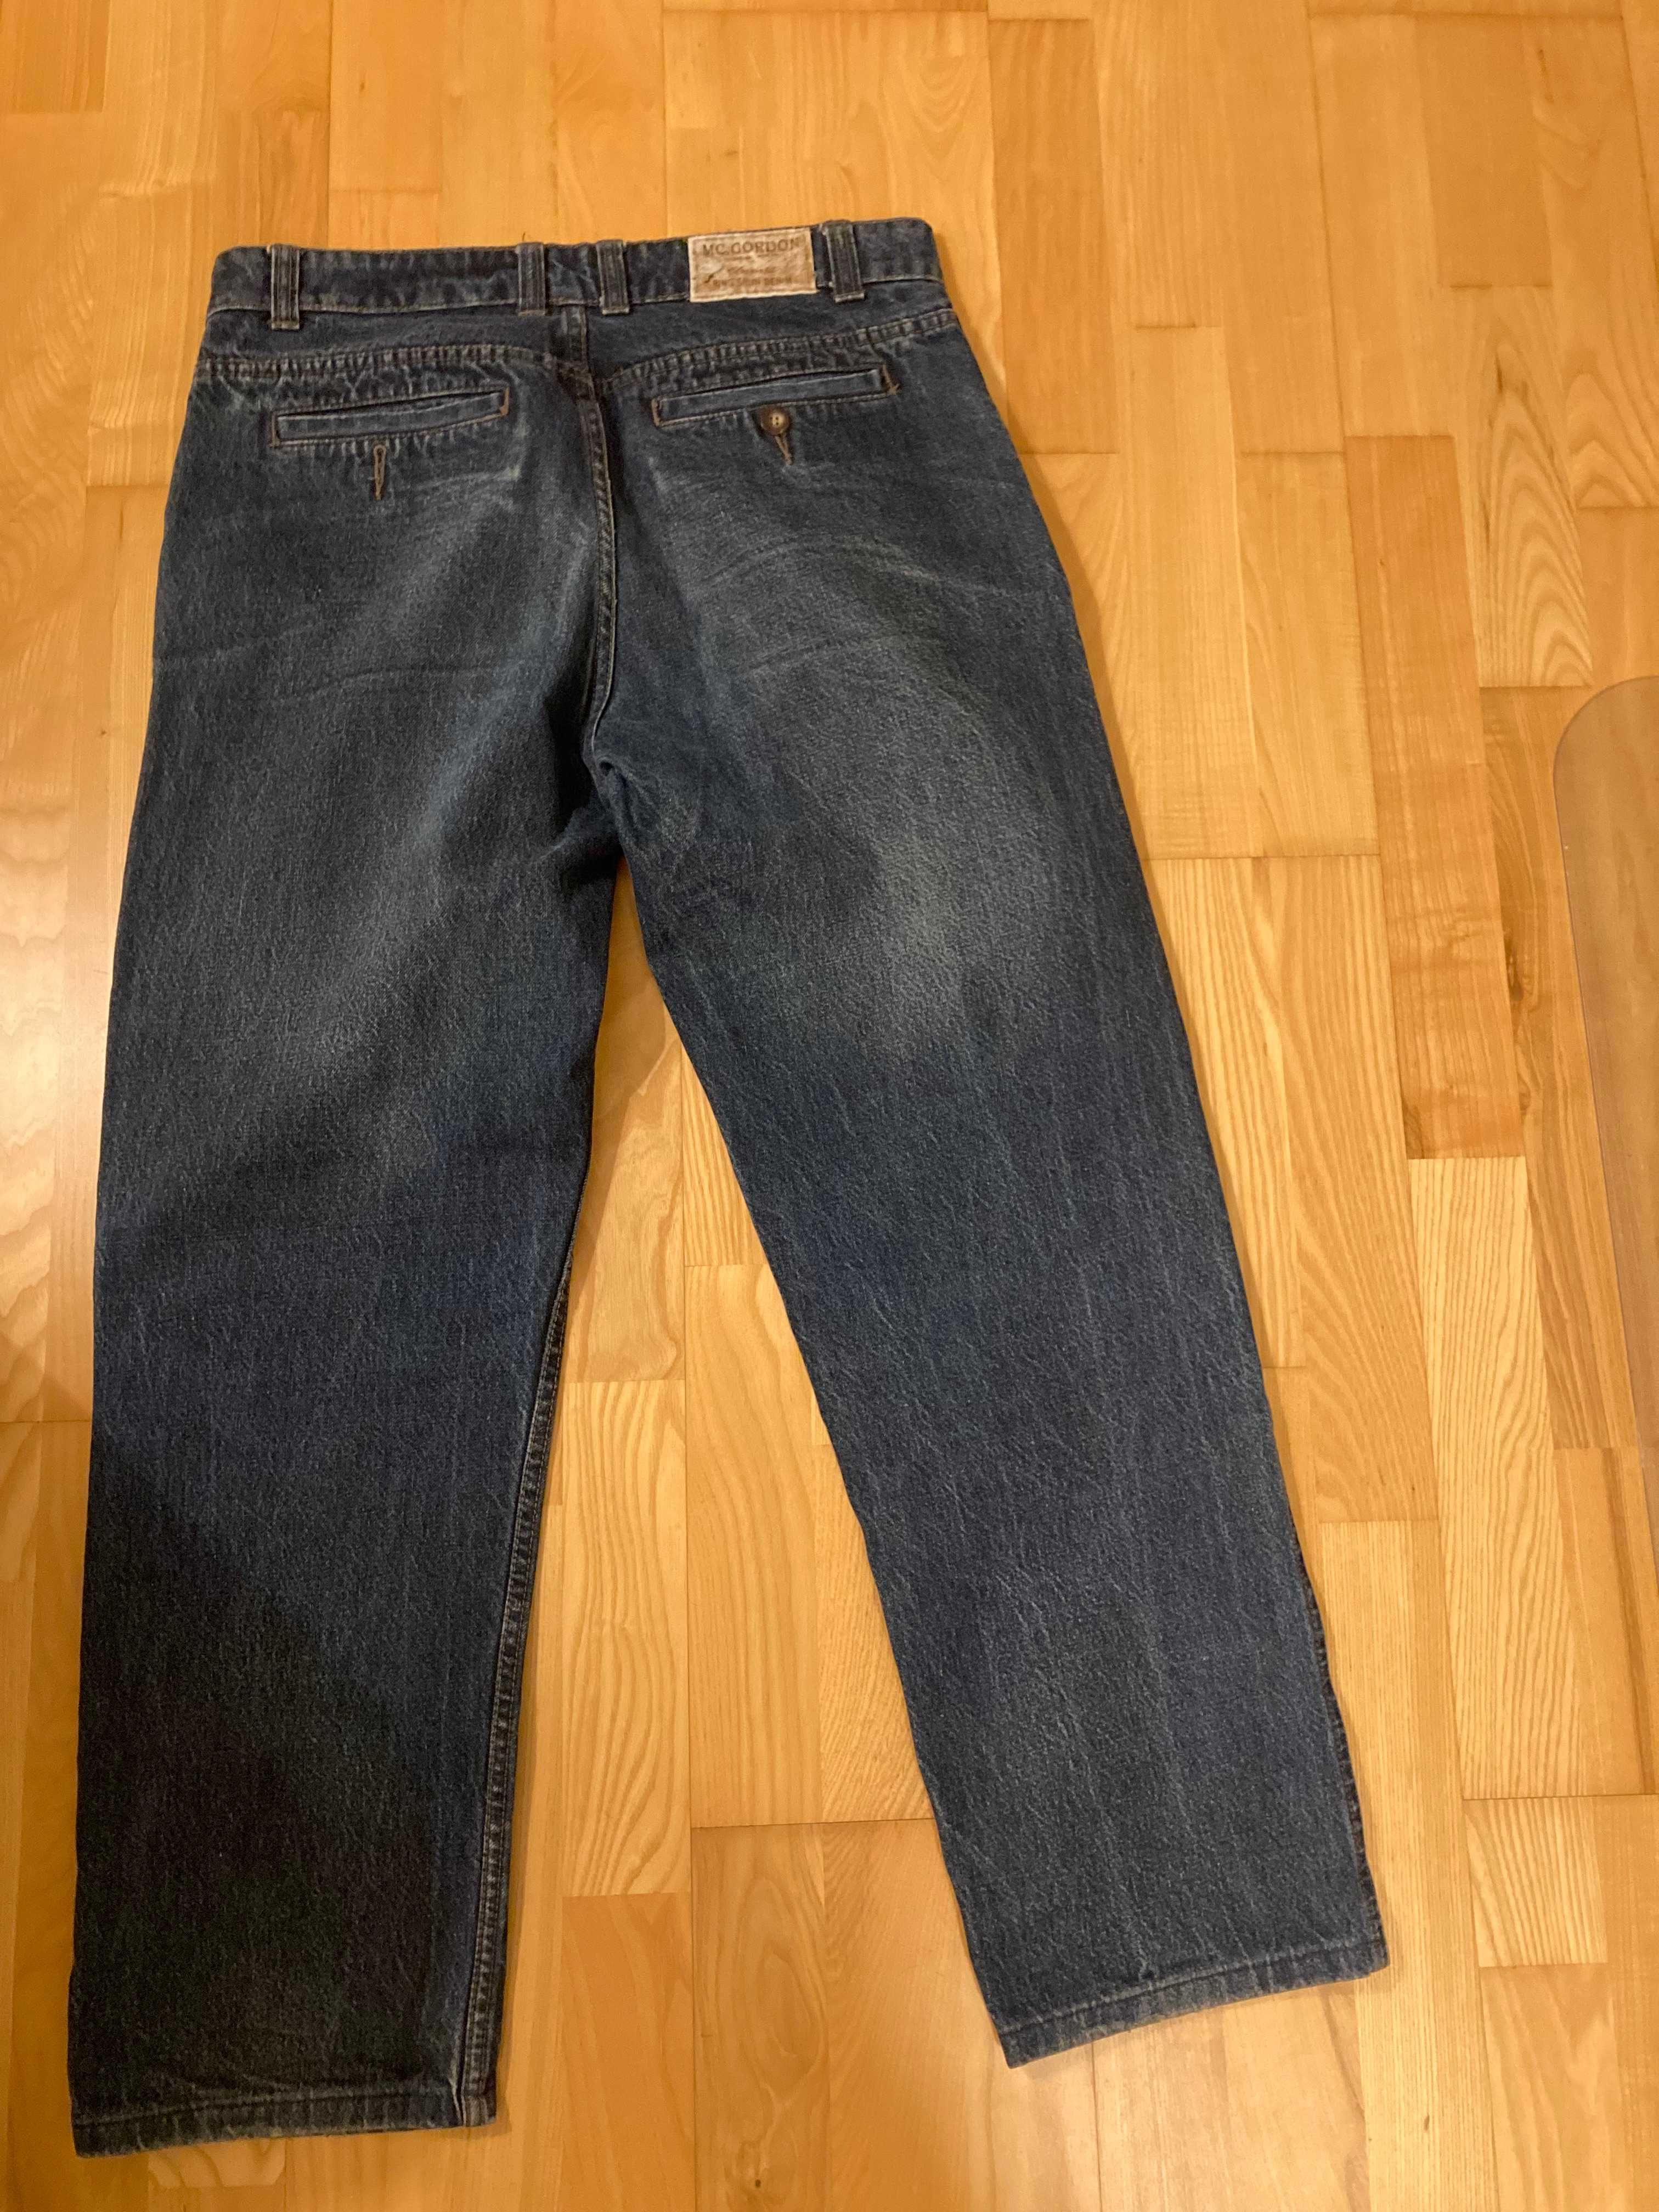 Spodnie męskie Jeans - Mc. Gordon. Rozm L - 36/32